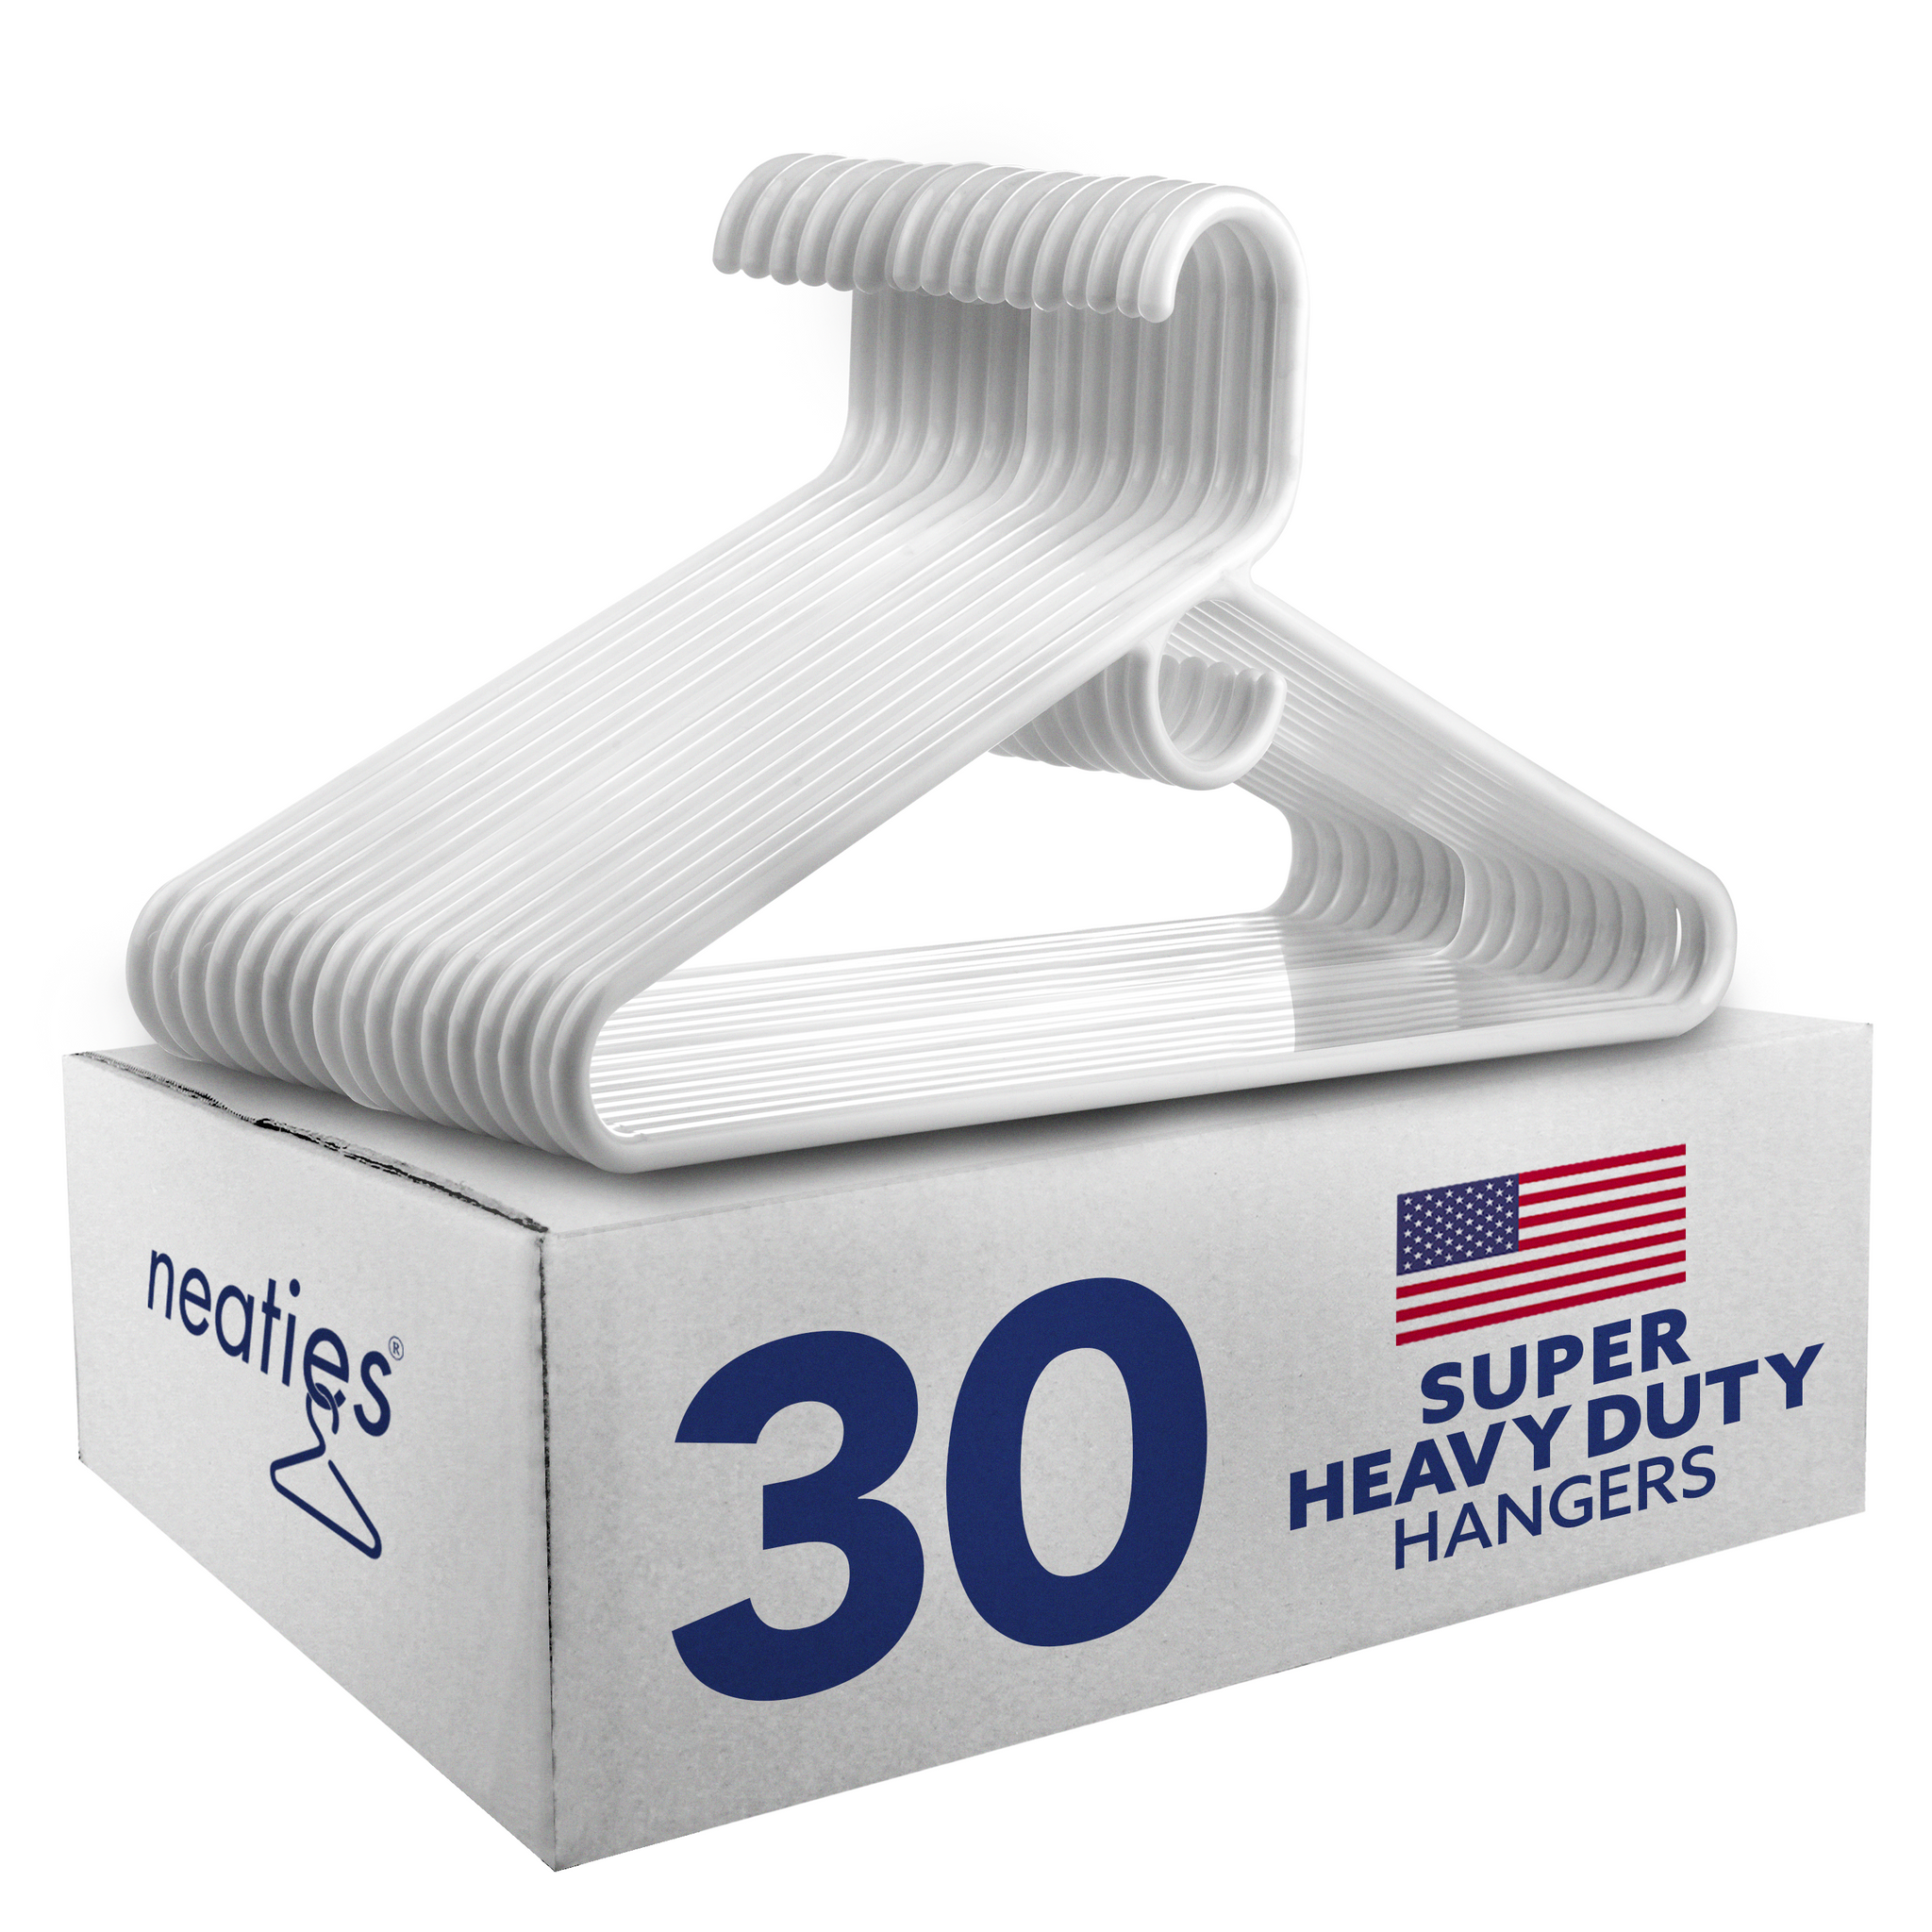 Merrick Heavy Duty Plastic Hangers, 30 pk. - White